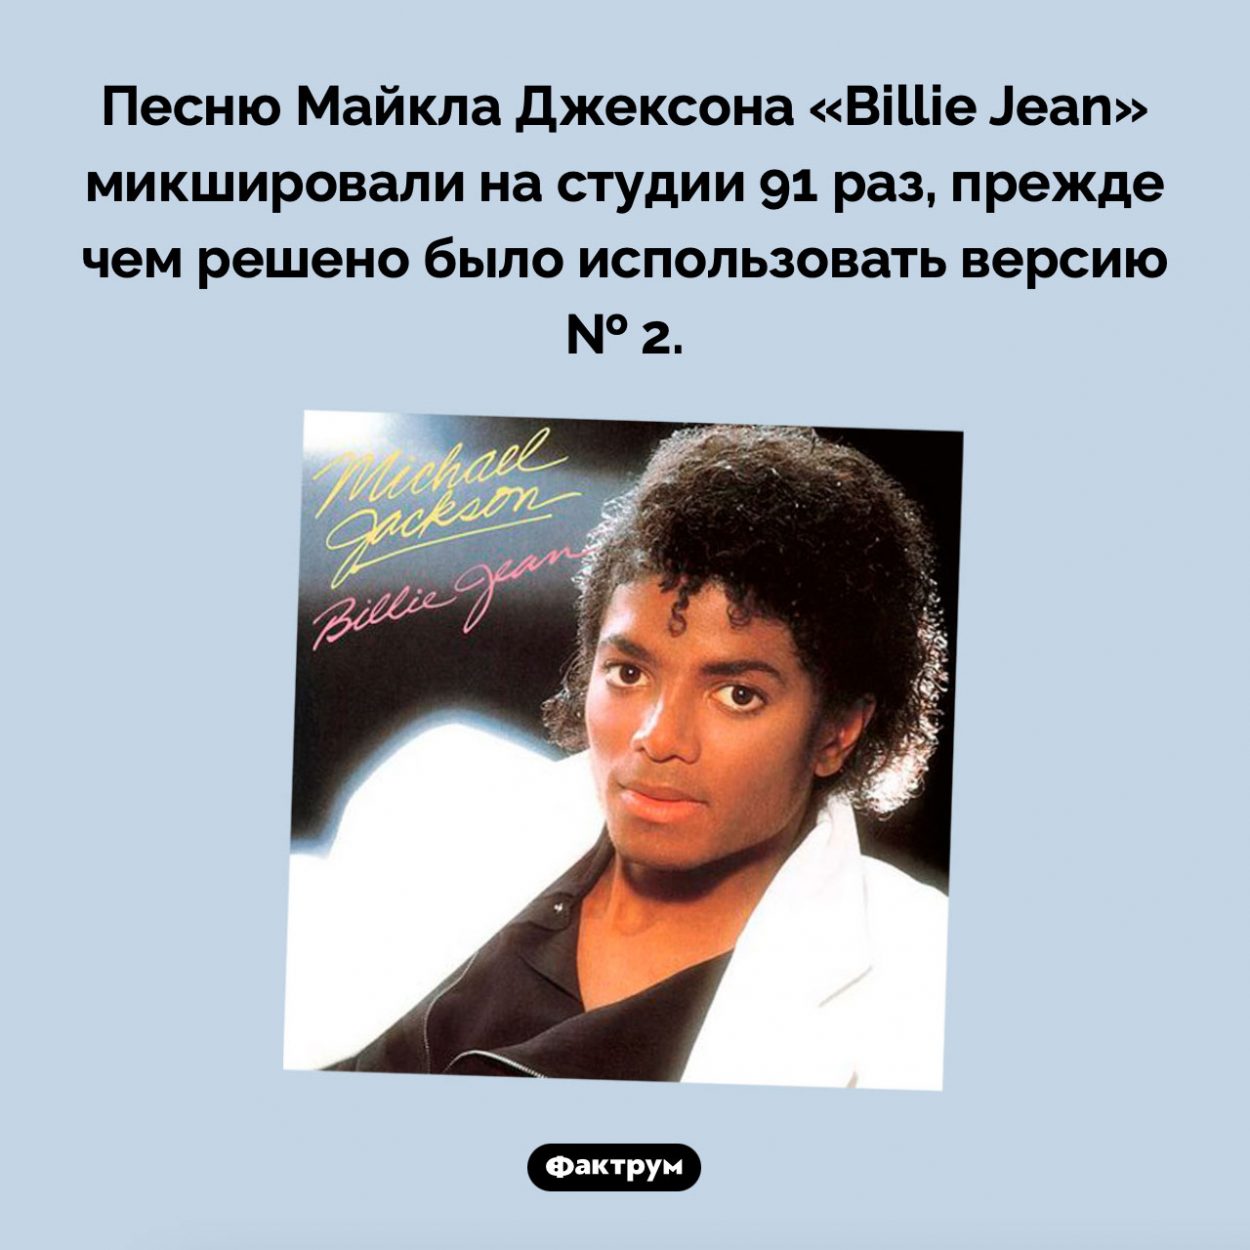 «Billie Jean» сводили 91 раз. Песню Майкла Джексона «Billie Jean» микшировали на студии 91 раз, прежде чем решено было использовать версию № 2.